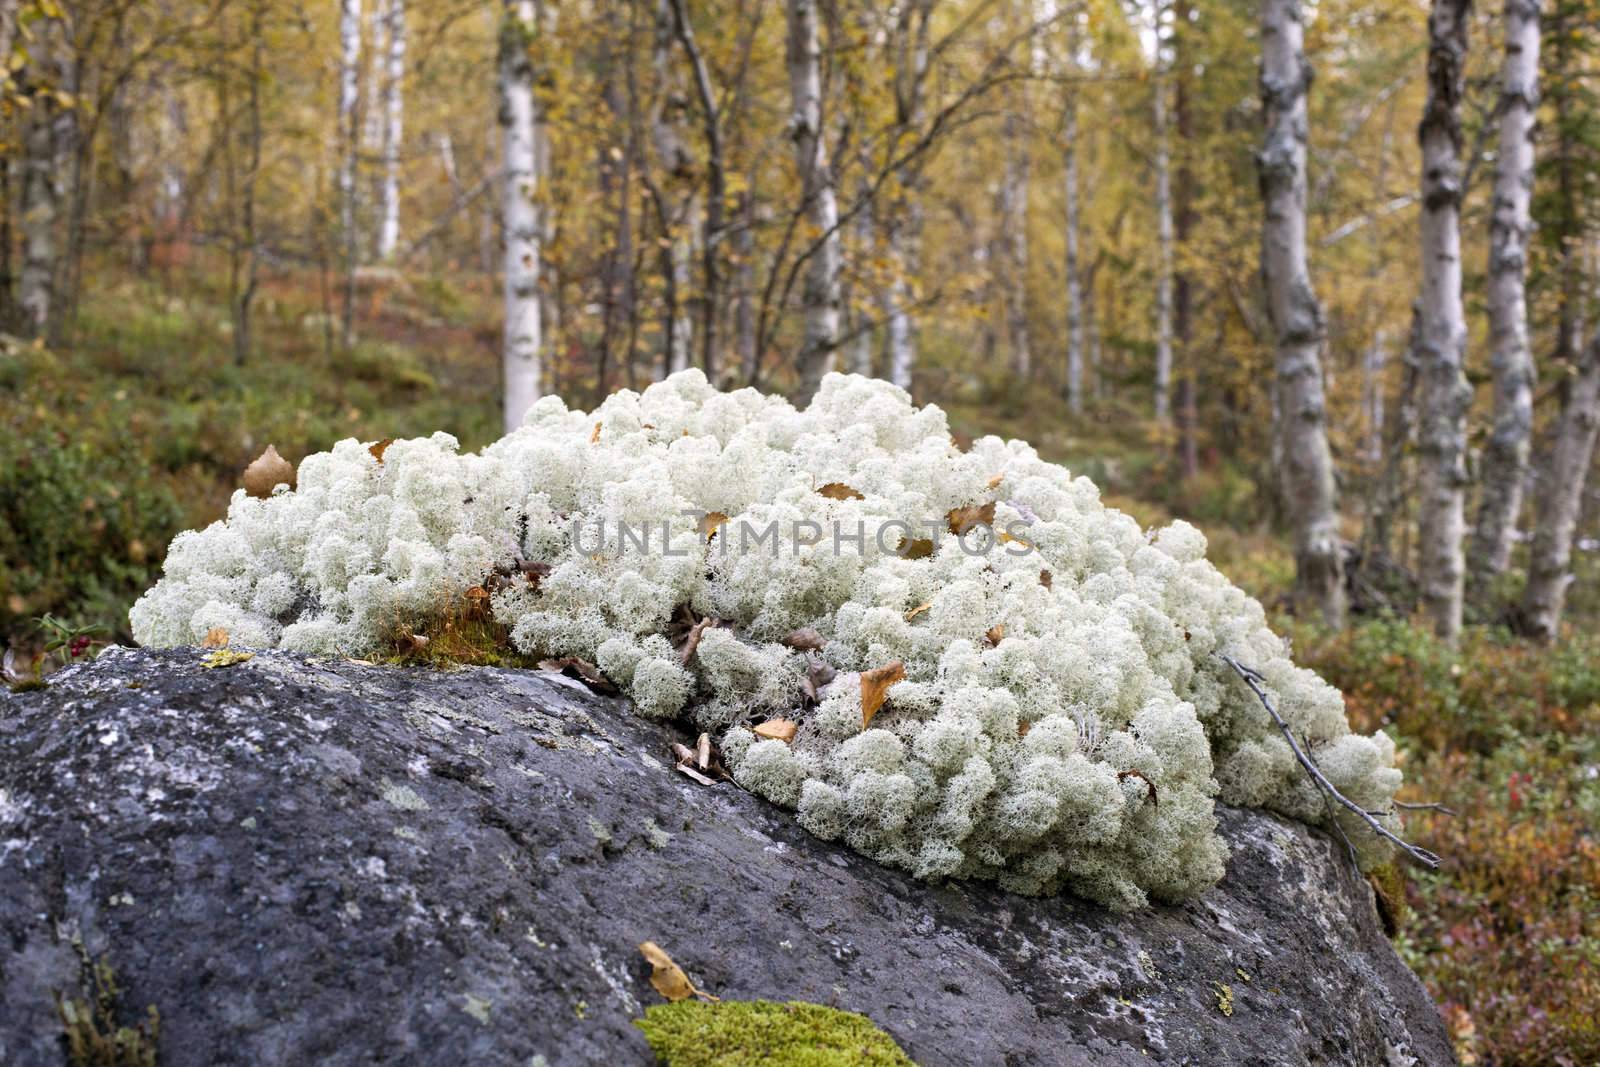 Reindeer lichen under natural conditions. Autumn